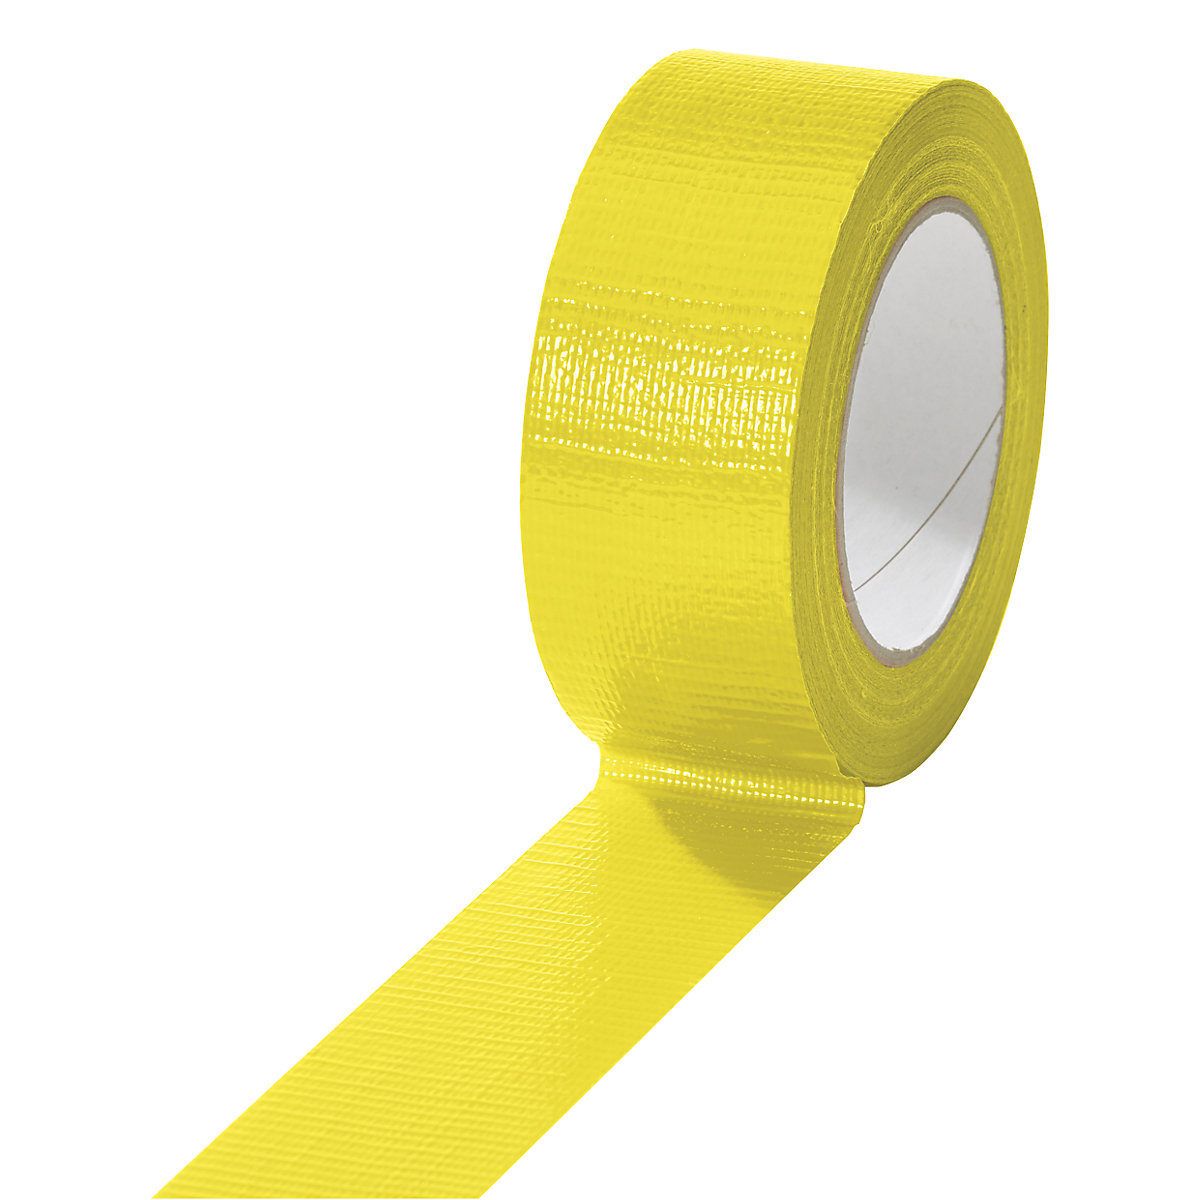 Cinta de tejido, en diferentes colores, UE 24 rollos, amarillo, anchura de cinta 38 mm-13